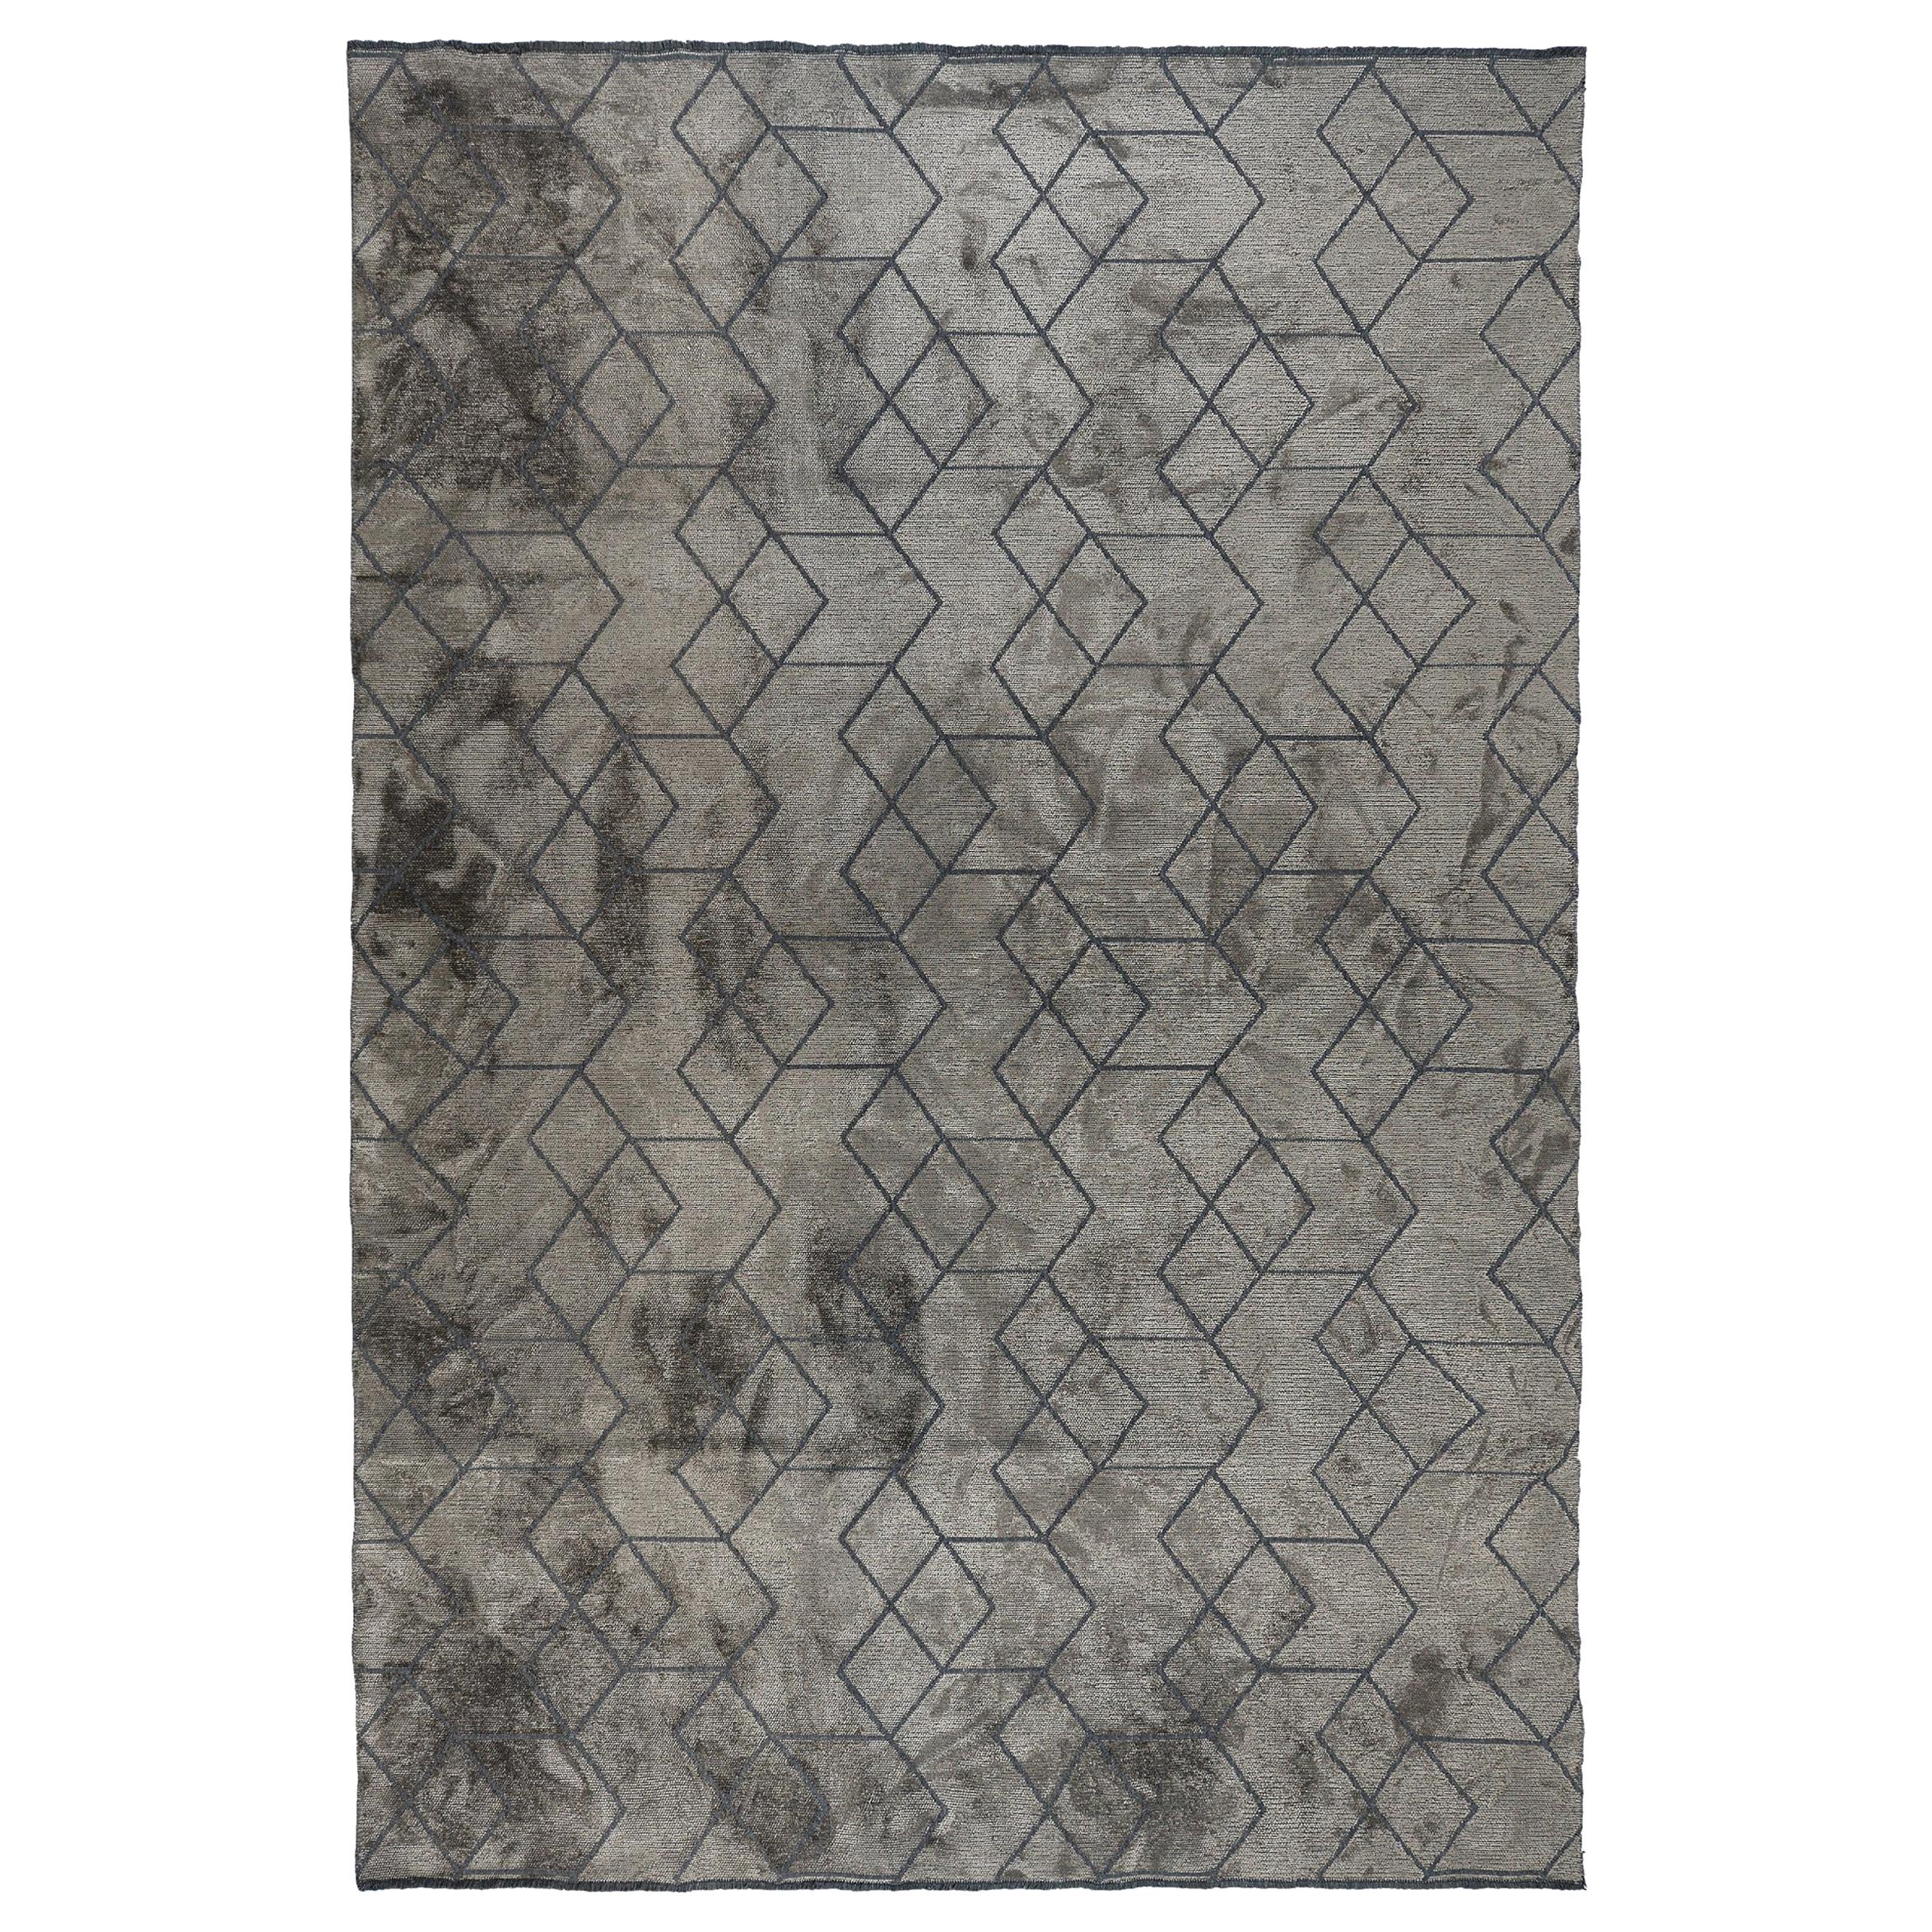 Luxuriöser, weicher Teppich in zeitgenössischem Design mit dunkelgrauem Muster, Paar